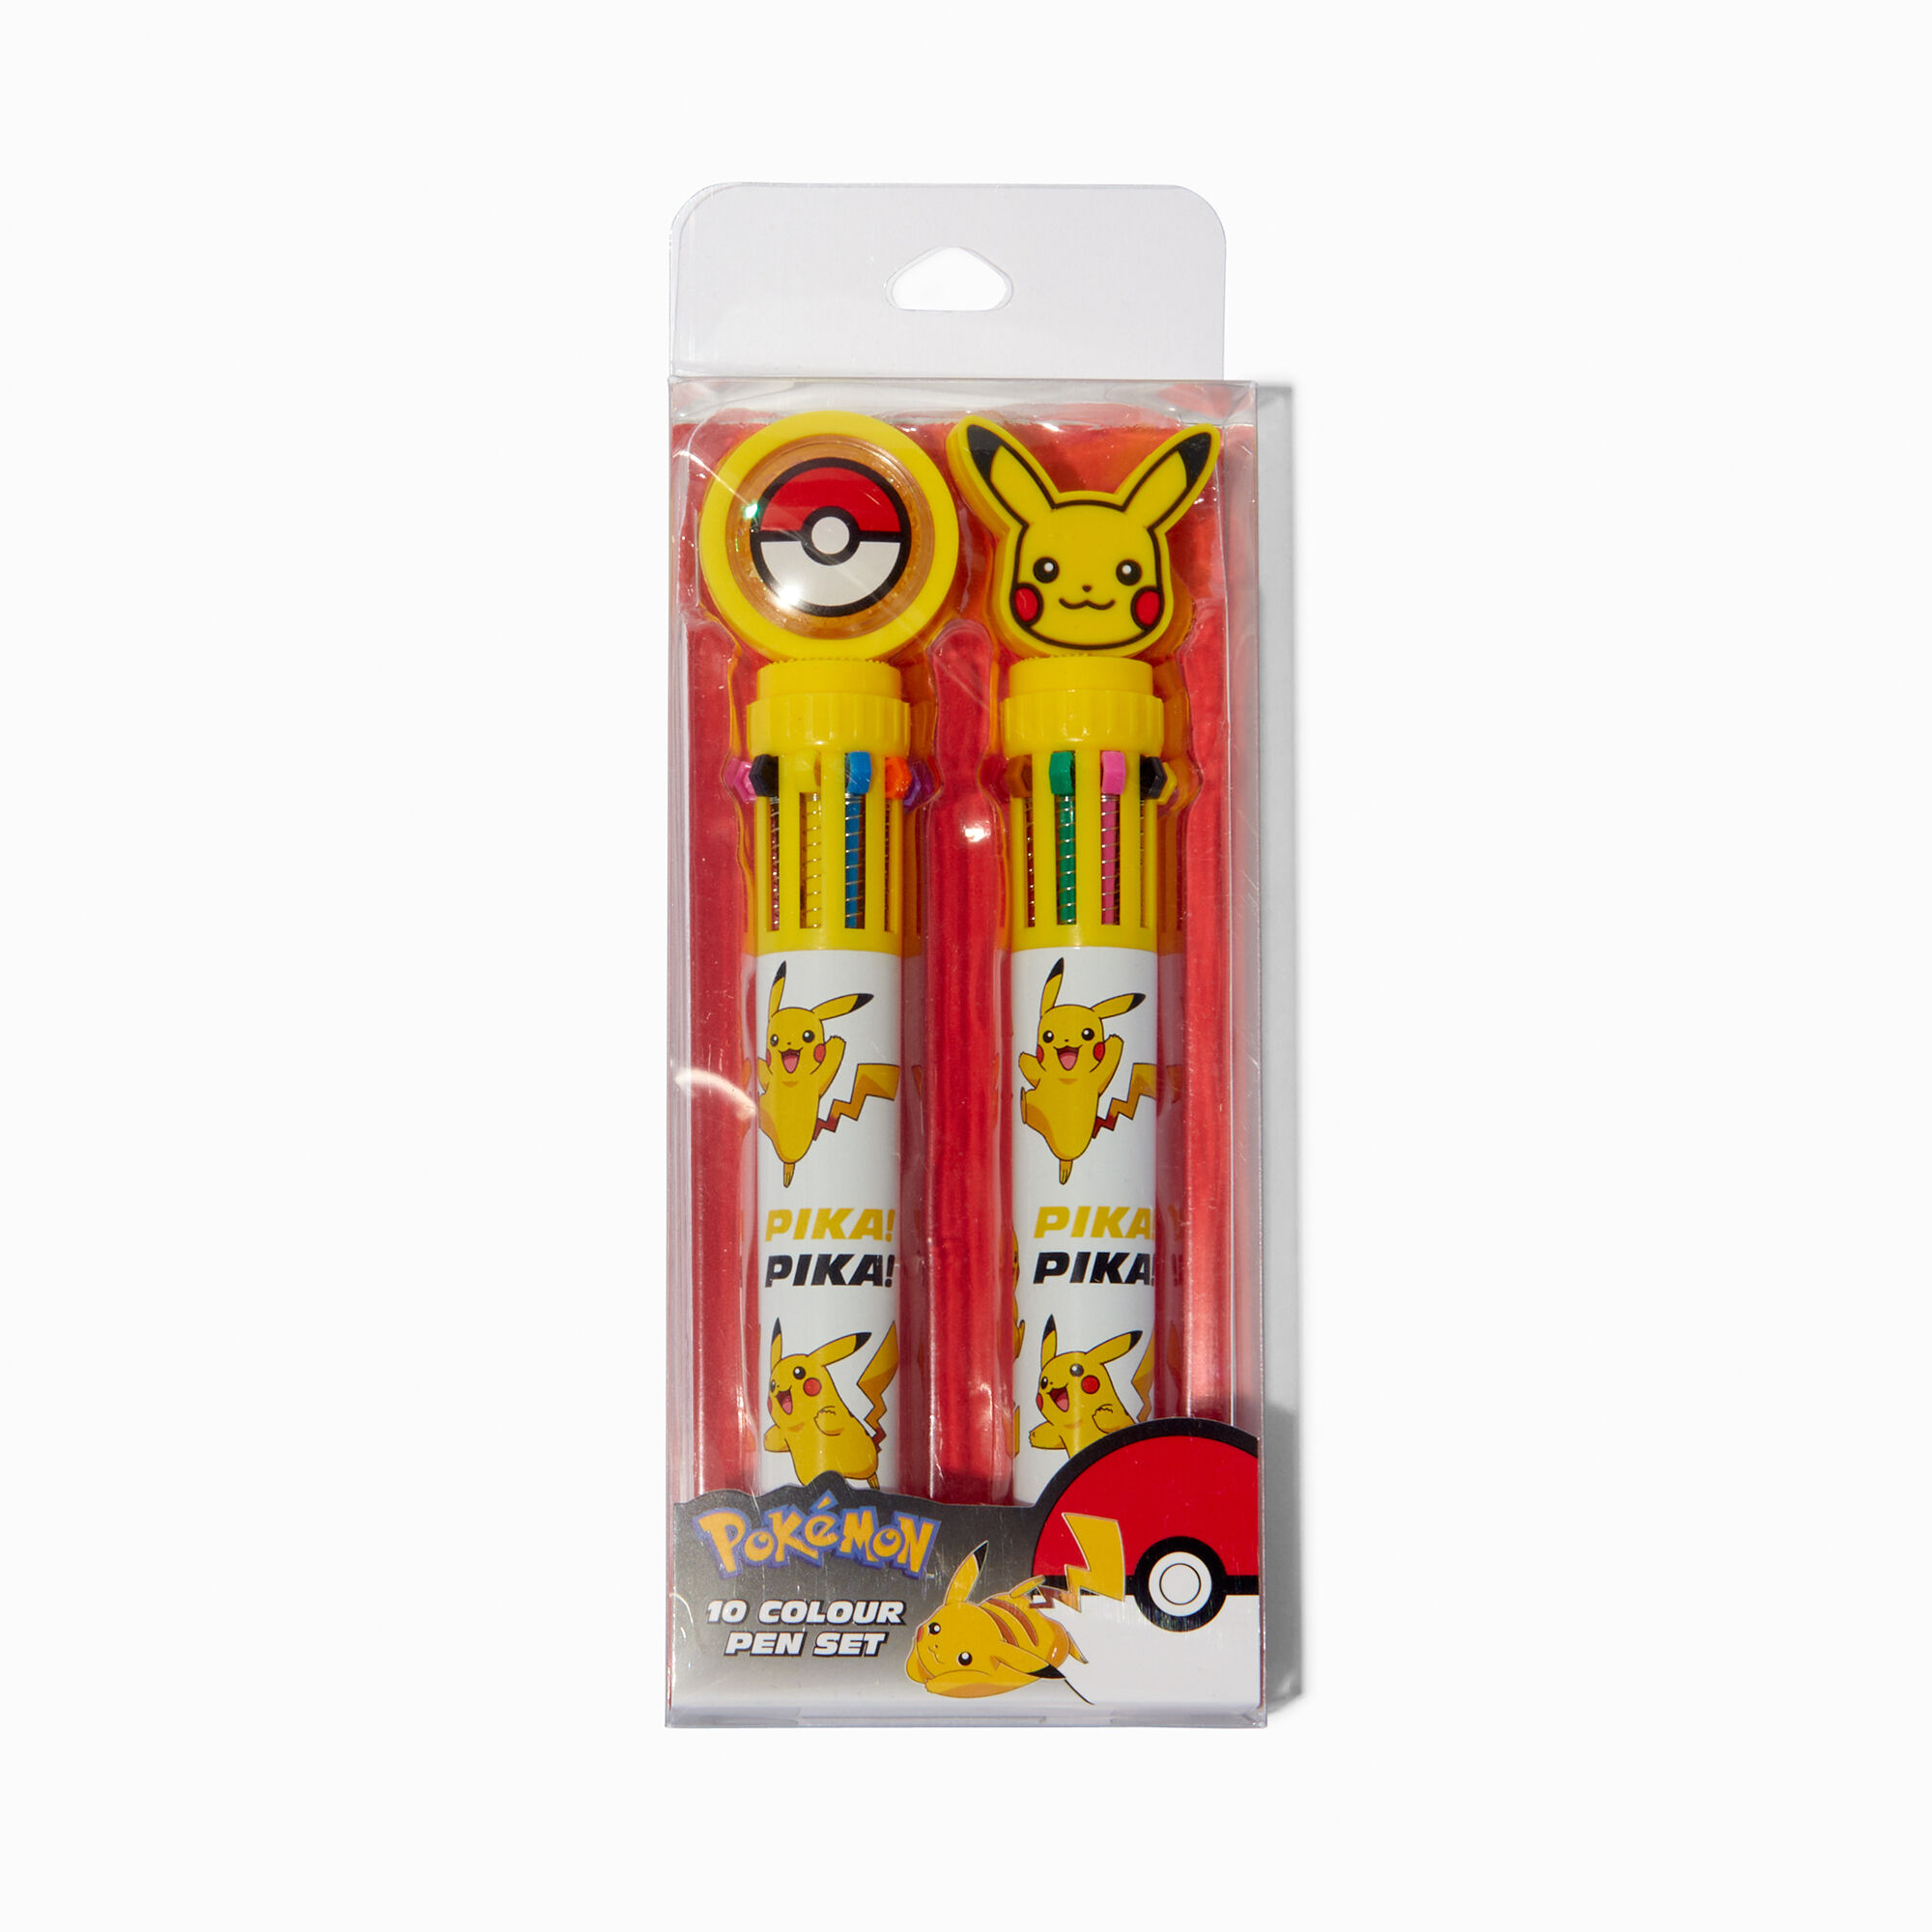 View Claires Pokémon ed Pen Set 2 Pack information